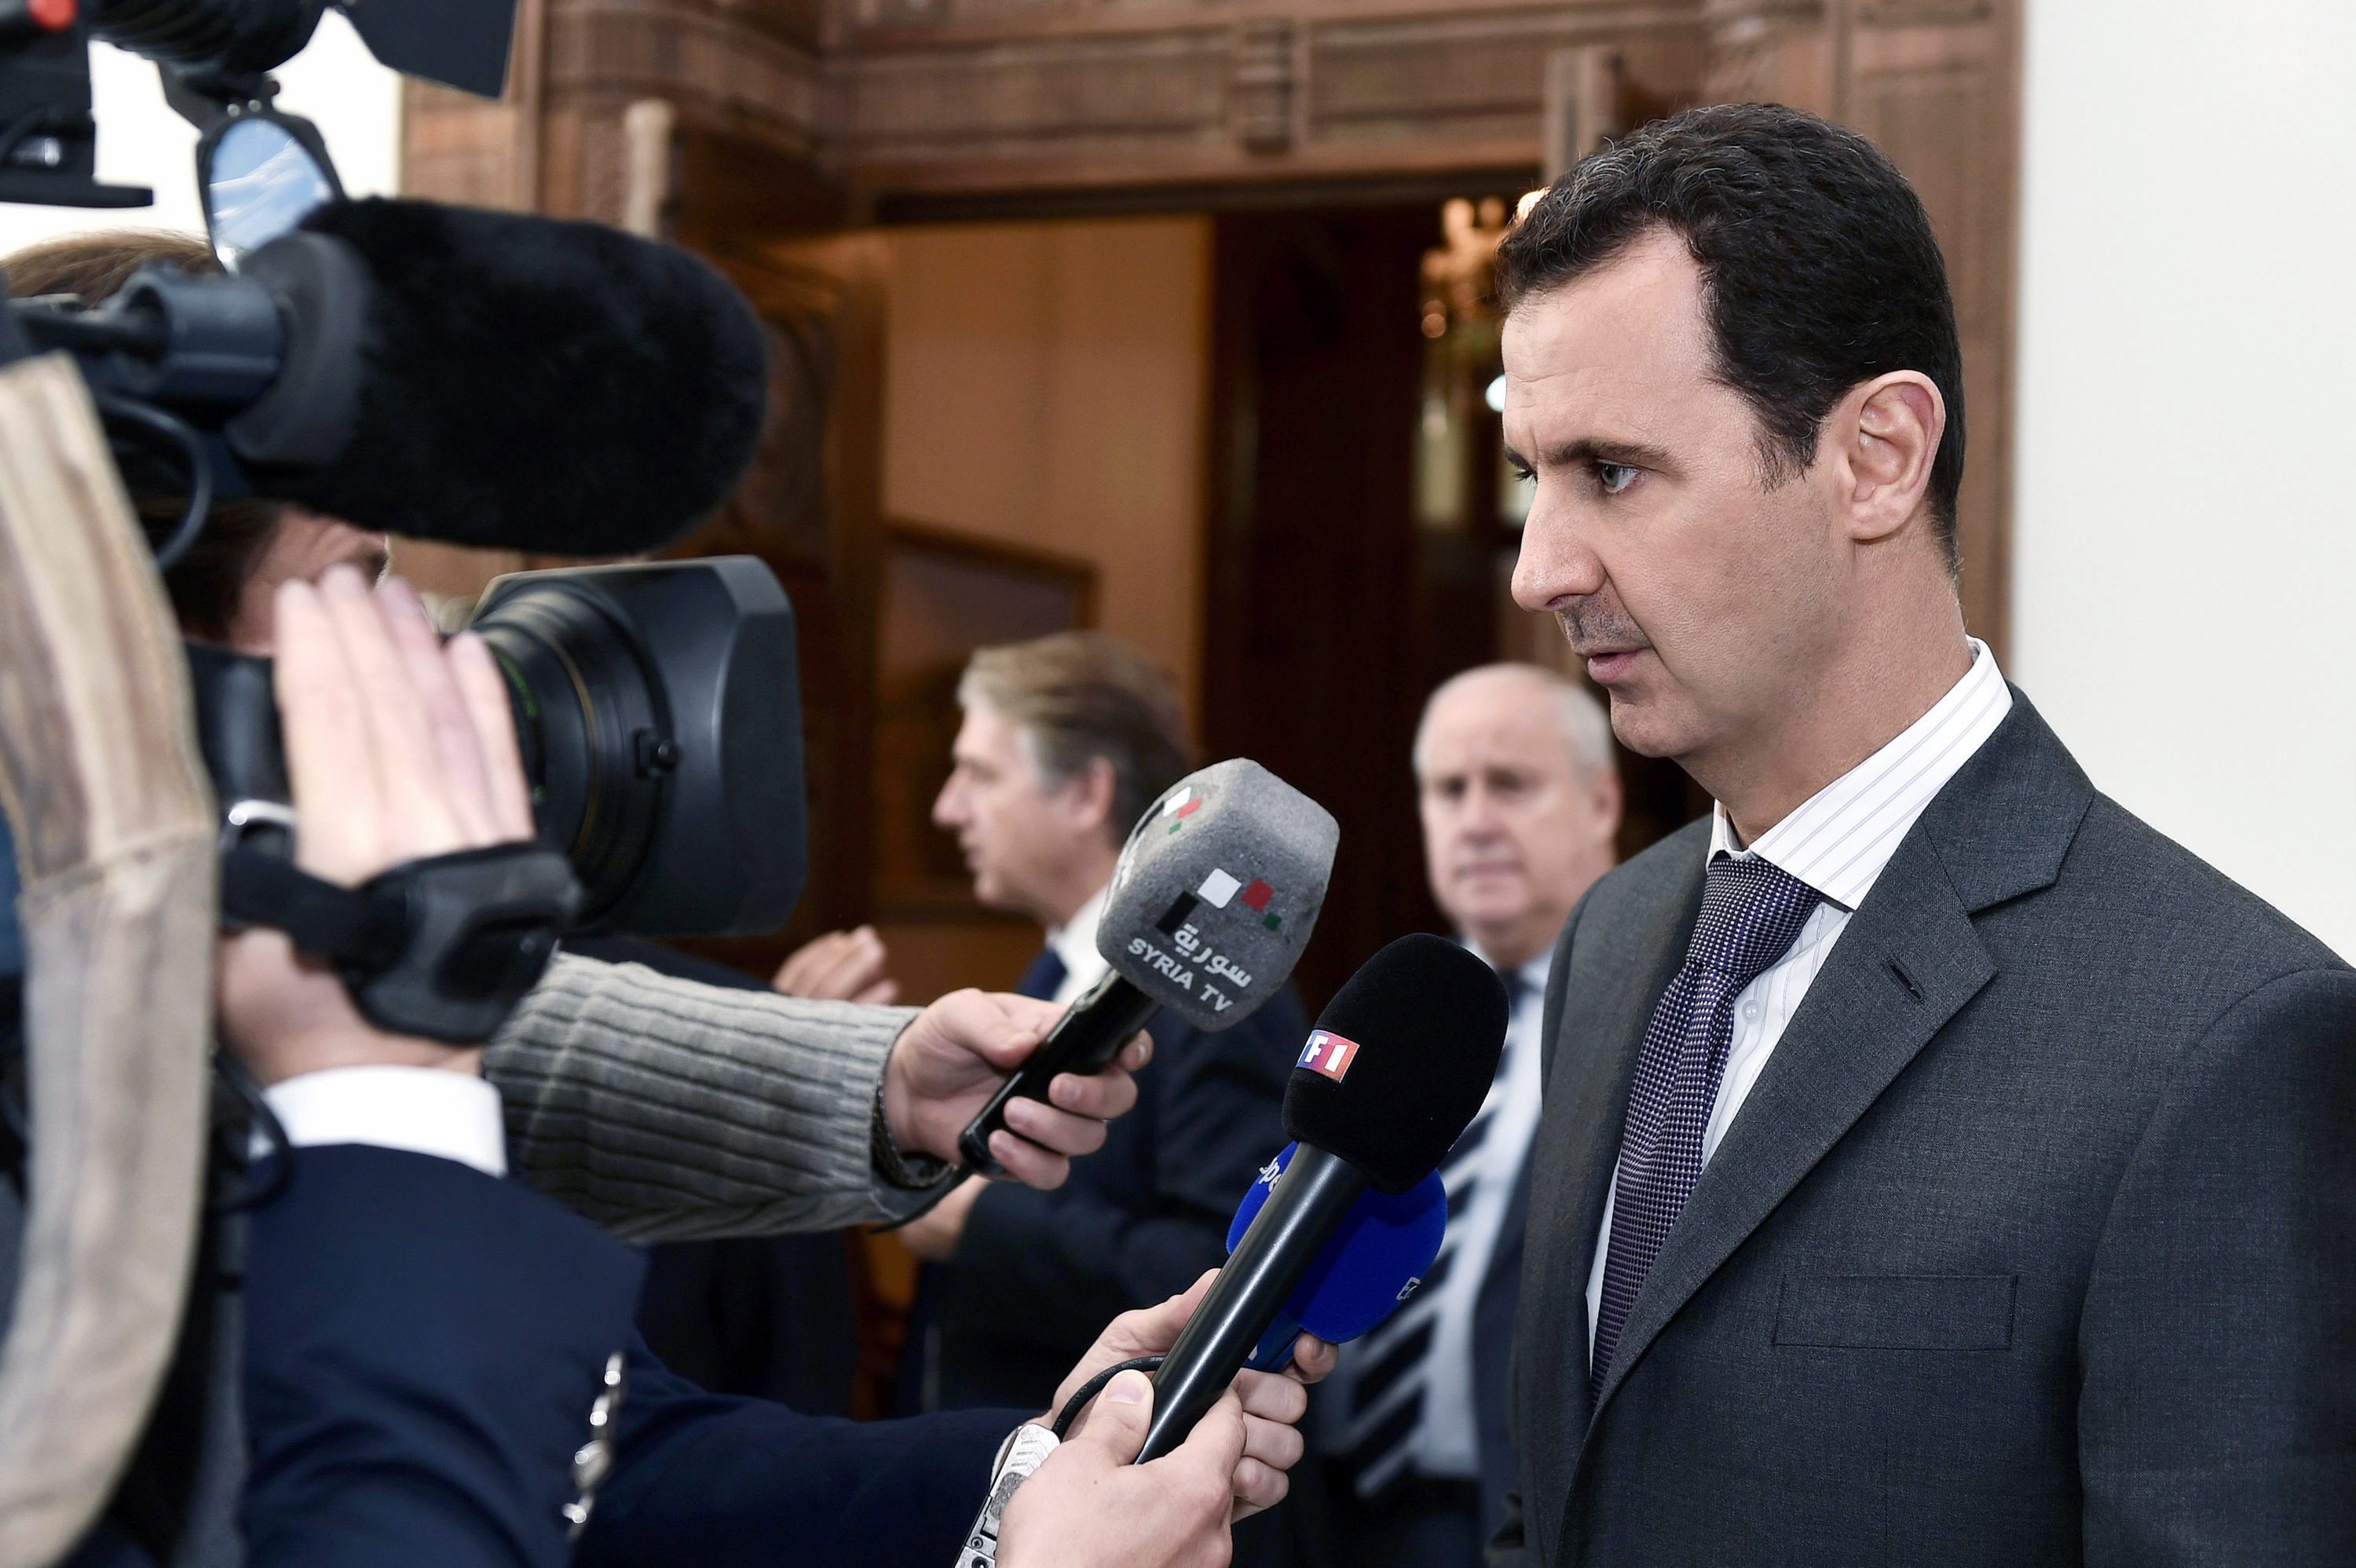 Ασαντ: Αυτό που πέρασε το Παρίσι, το βιώνουμε εδώ και καιρό